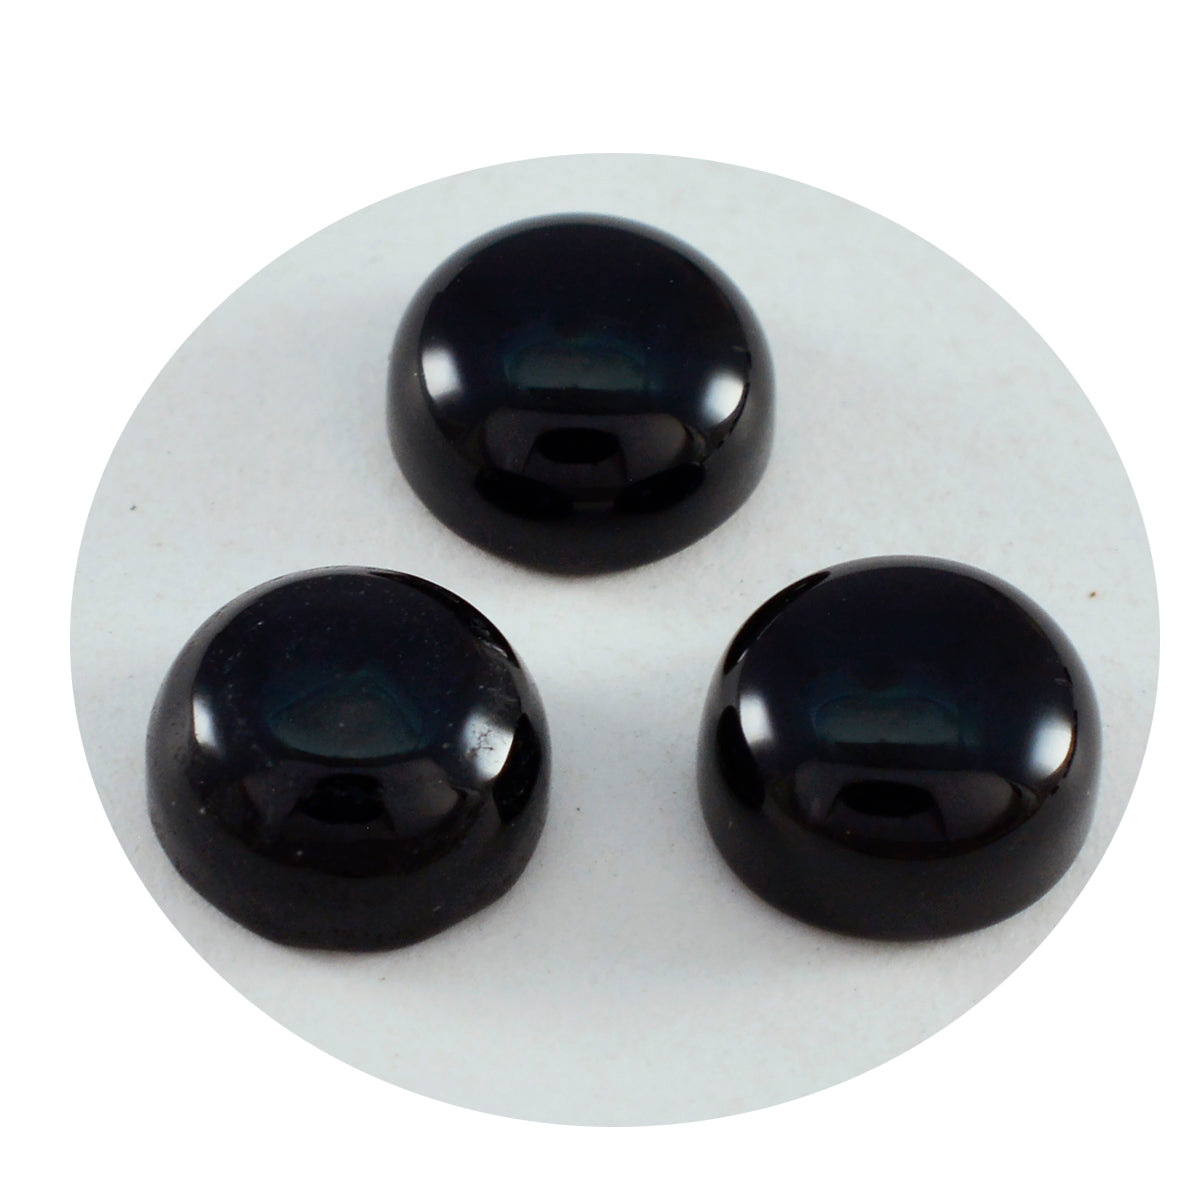 Riyogems 1 Stück schwarzer Onyx-Cabochon, 9 x 9 mm, runde Form, wunderschöner Qualitätsstein